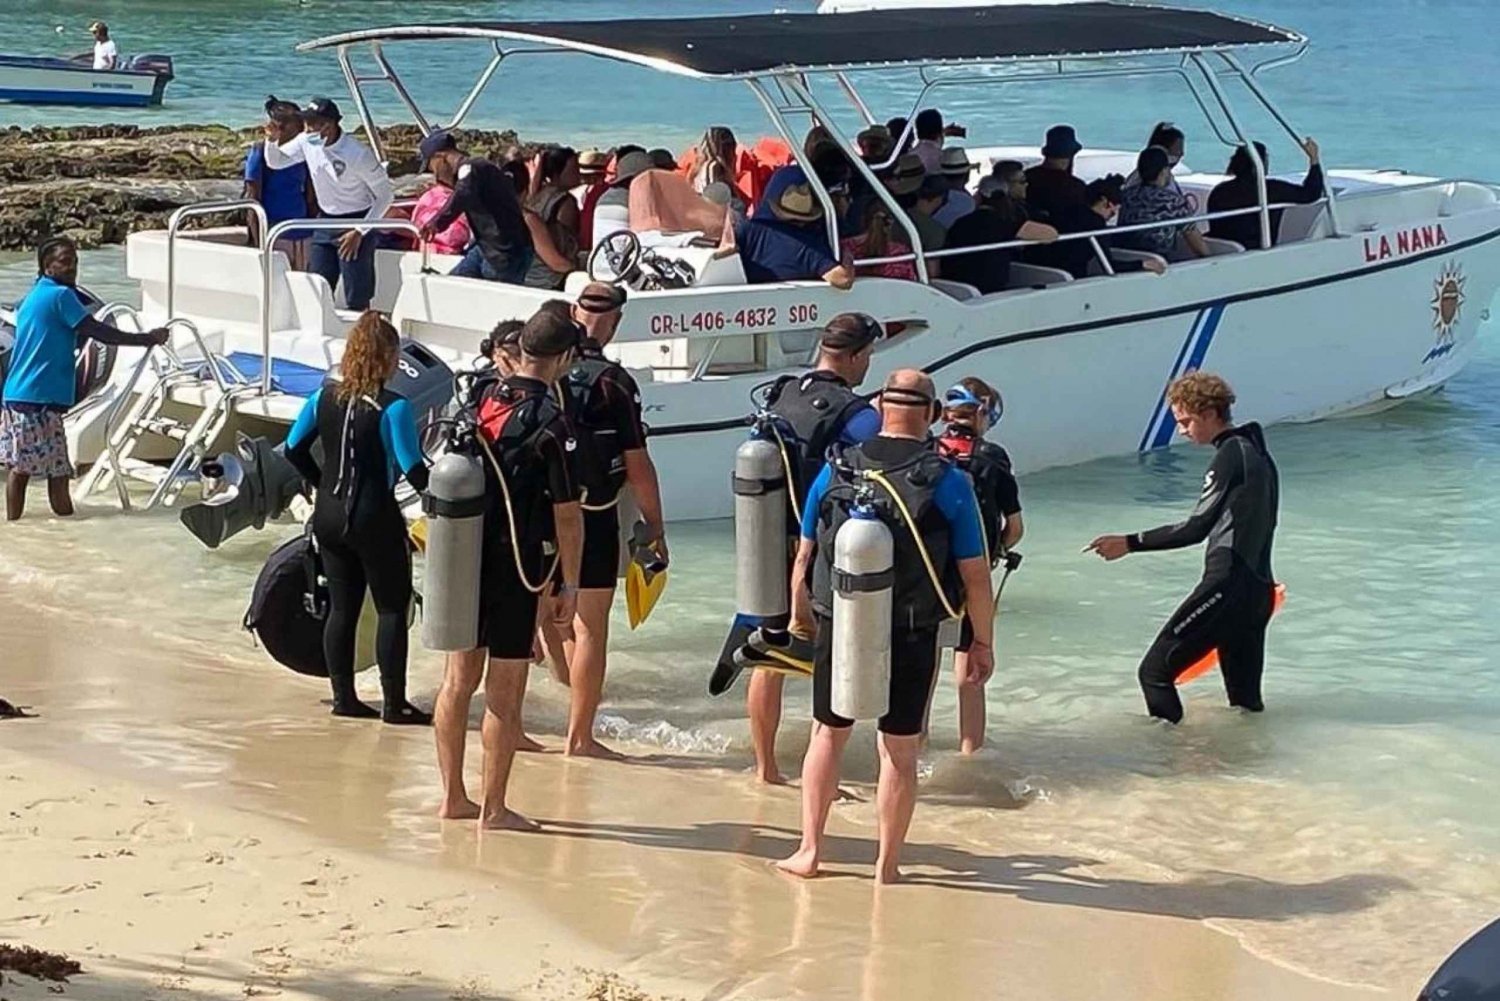 La Romana: Half-Day Scuba Diving Course with Hotel Pickup